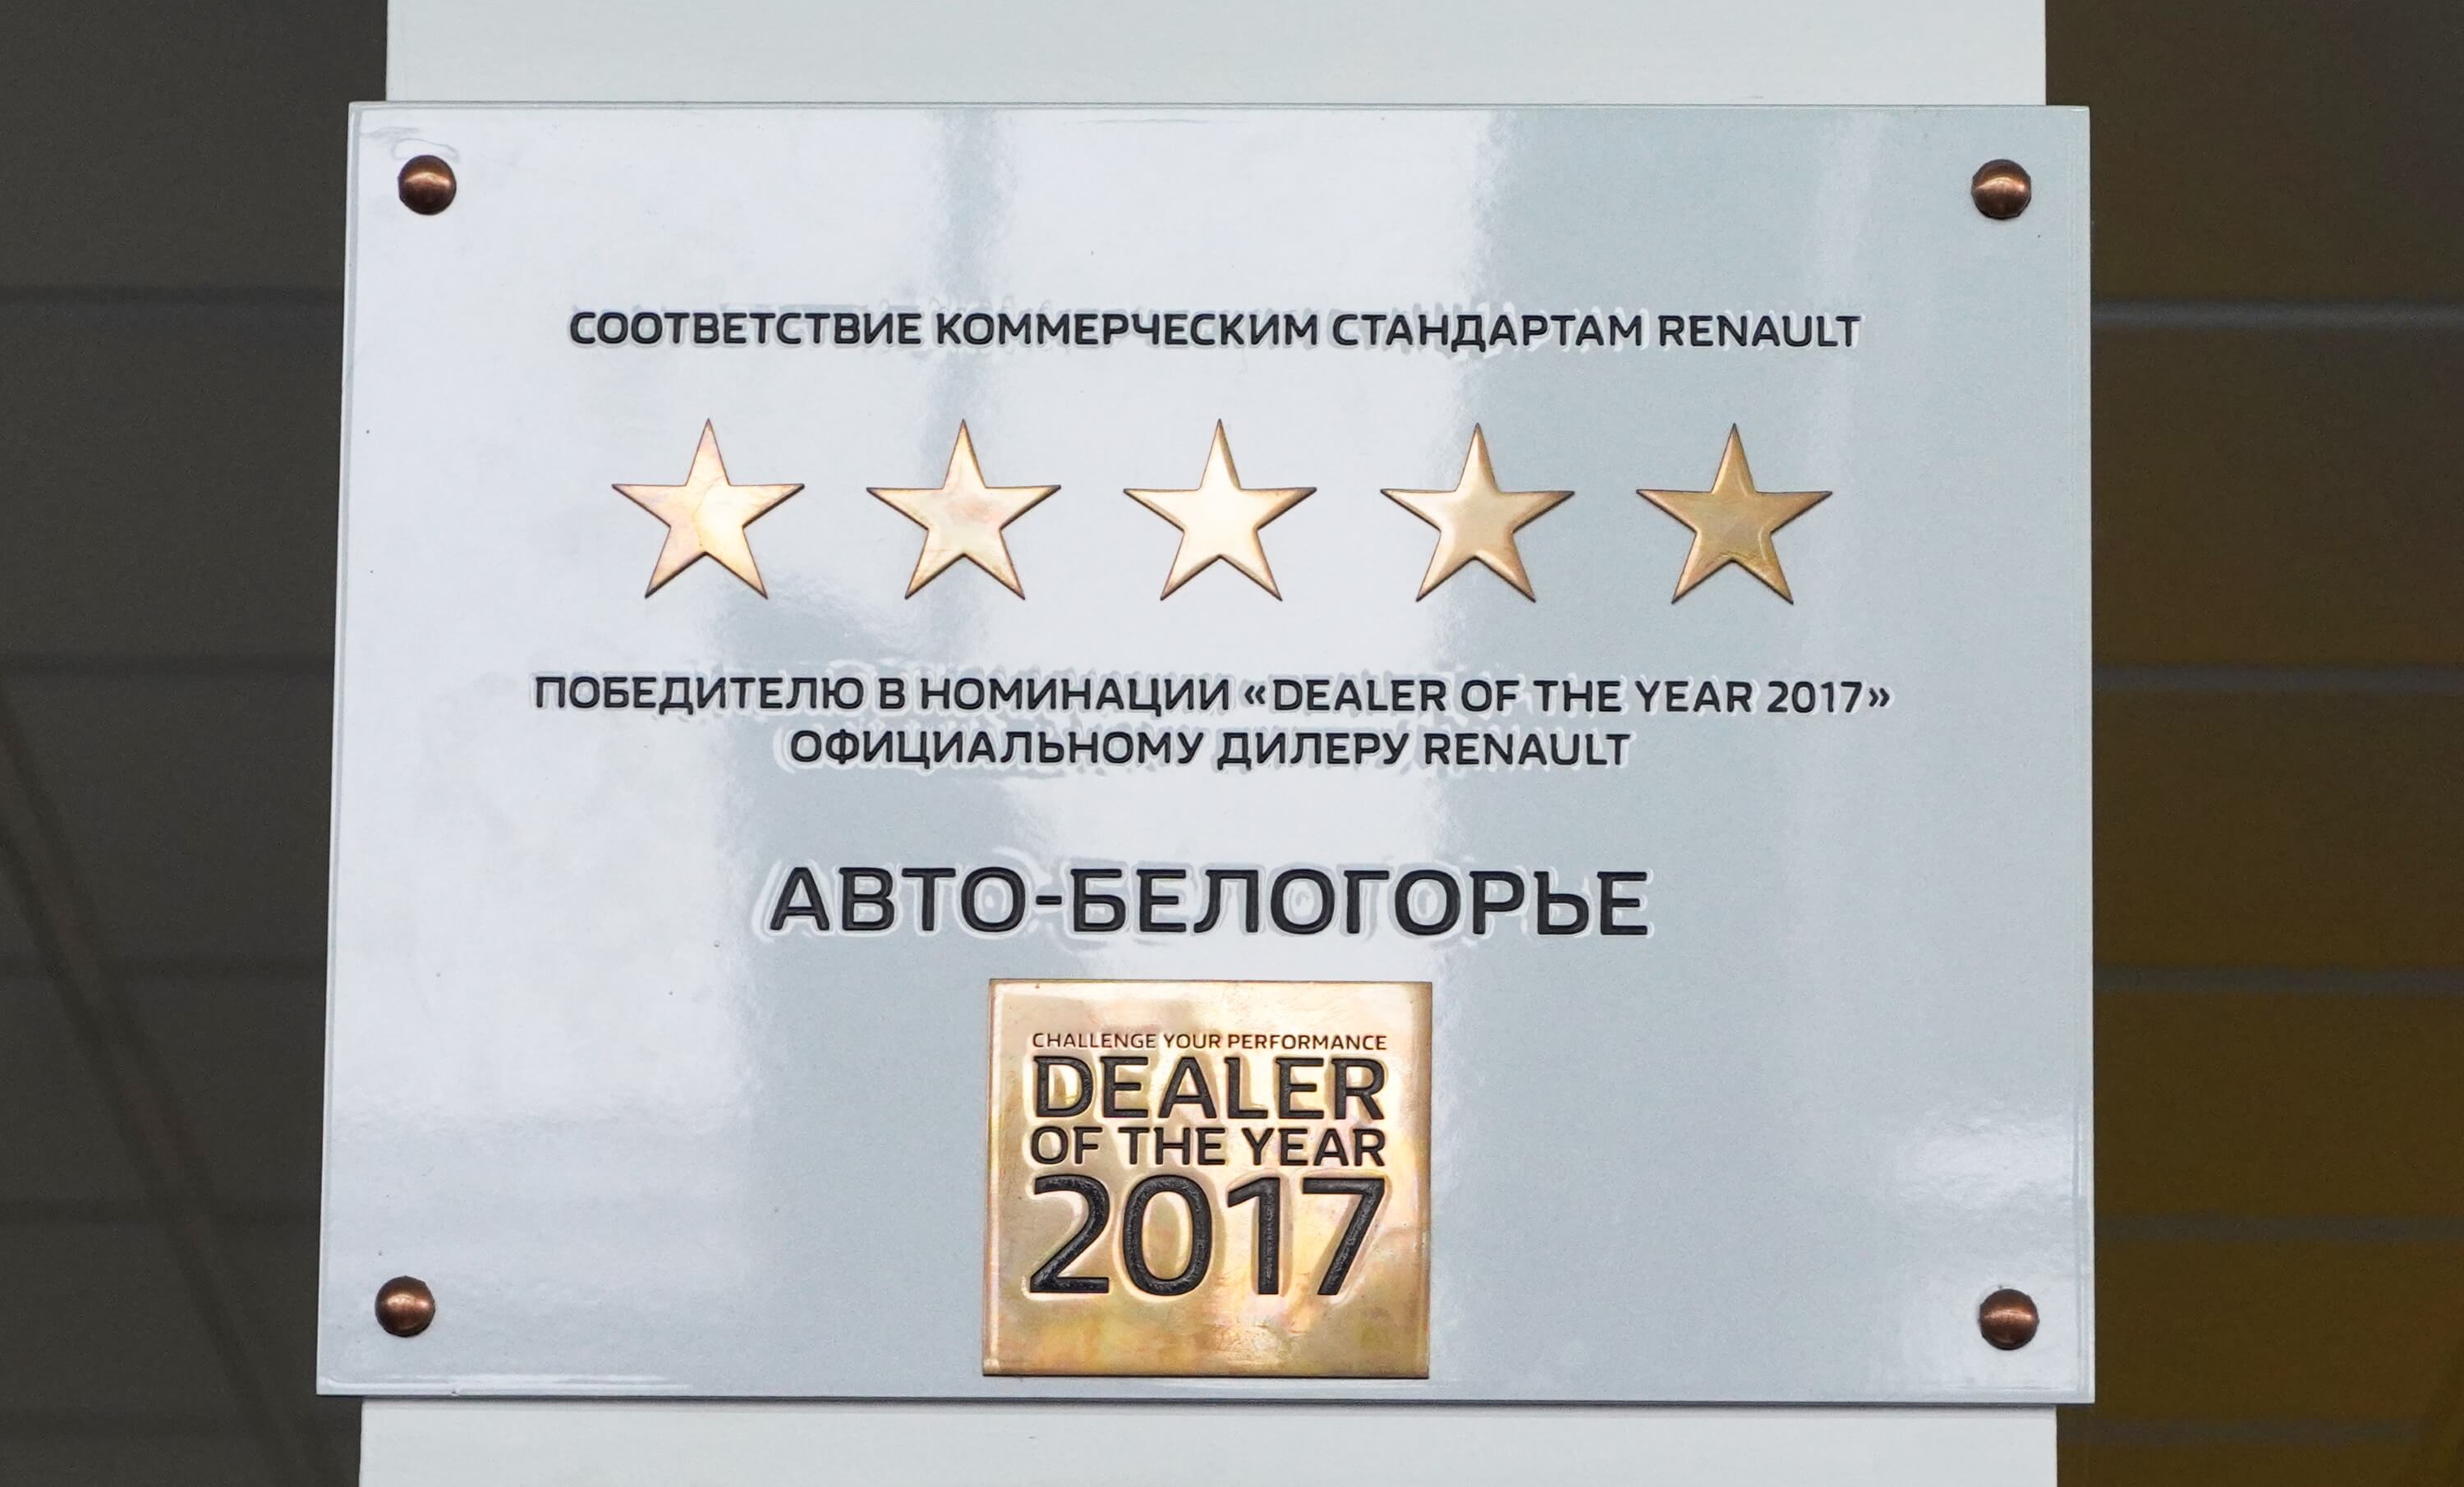 Соответствие коммерческим стандартам 2017. Официальный дилер Renault в Белгородской области.